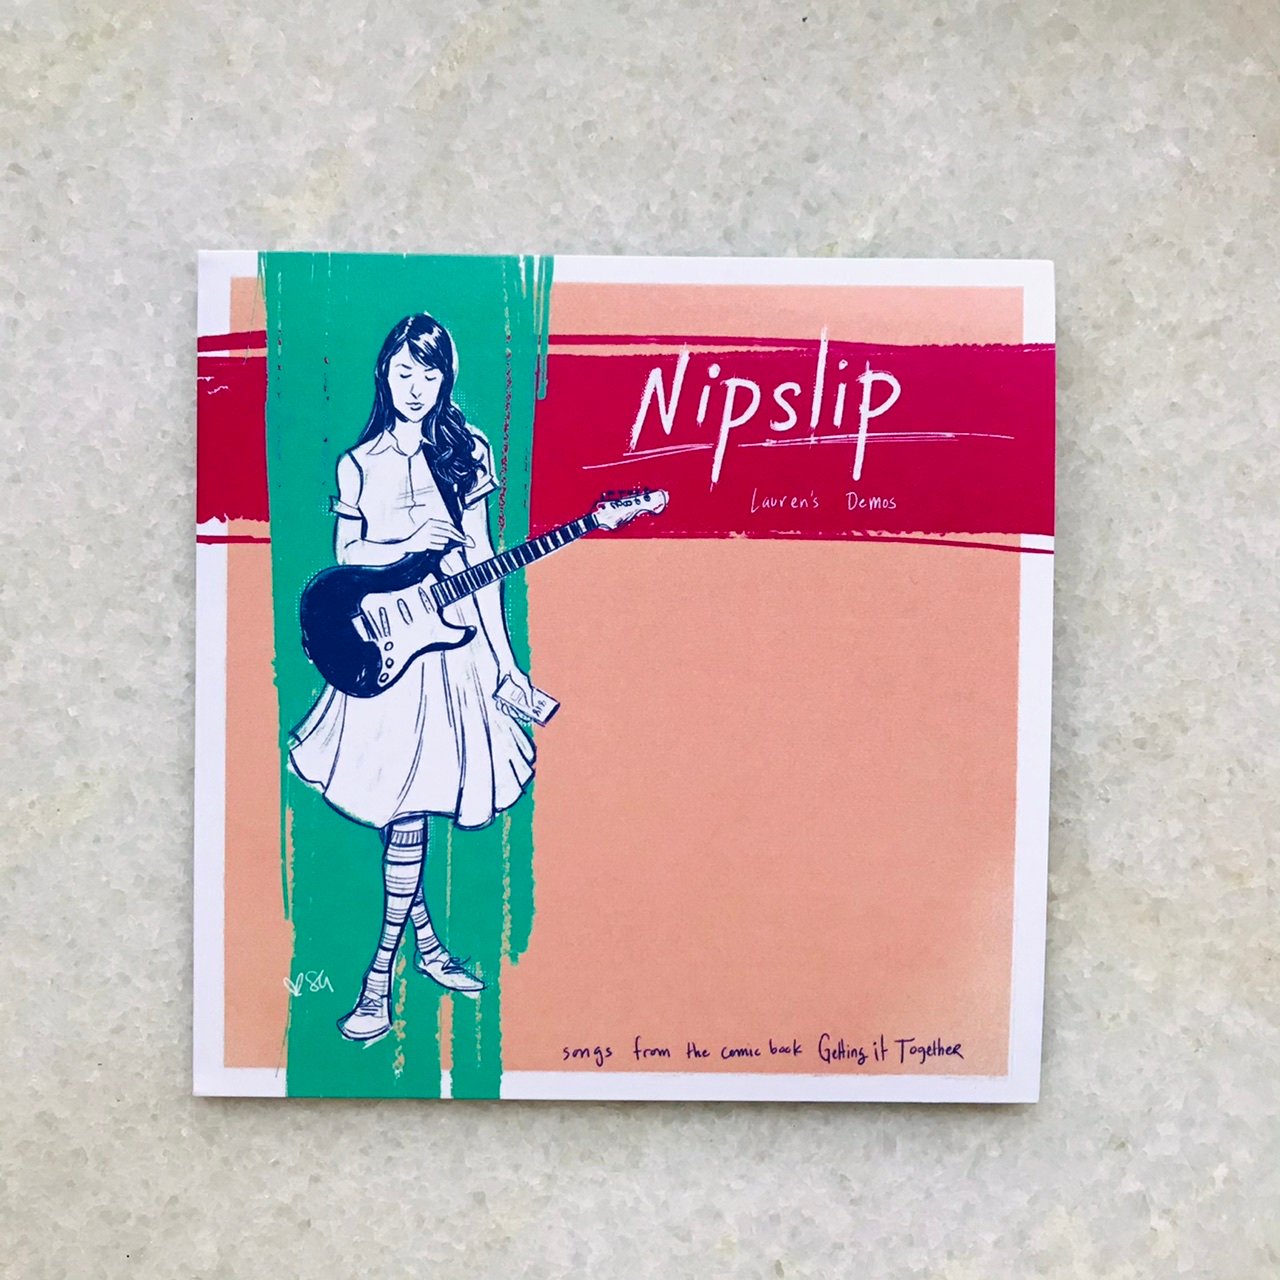 Image of NIPSLIP “Lauren’s demos” EP